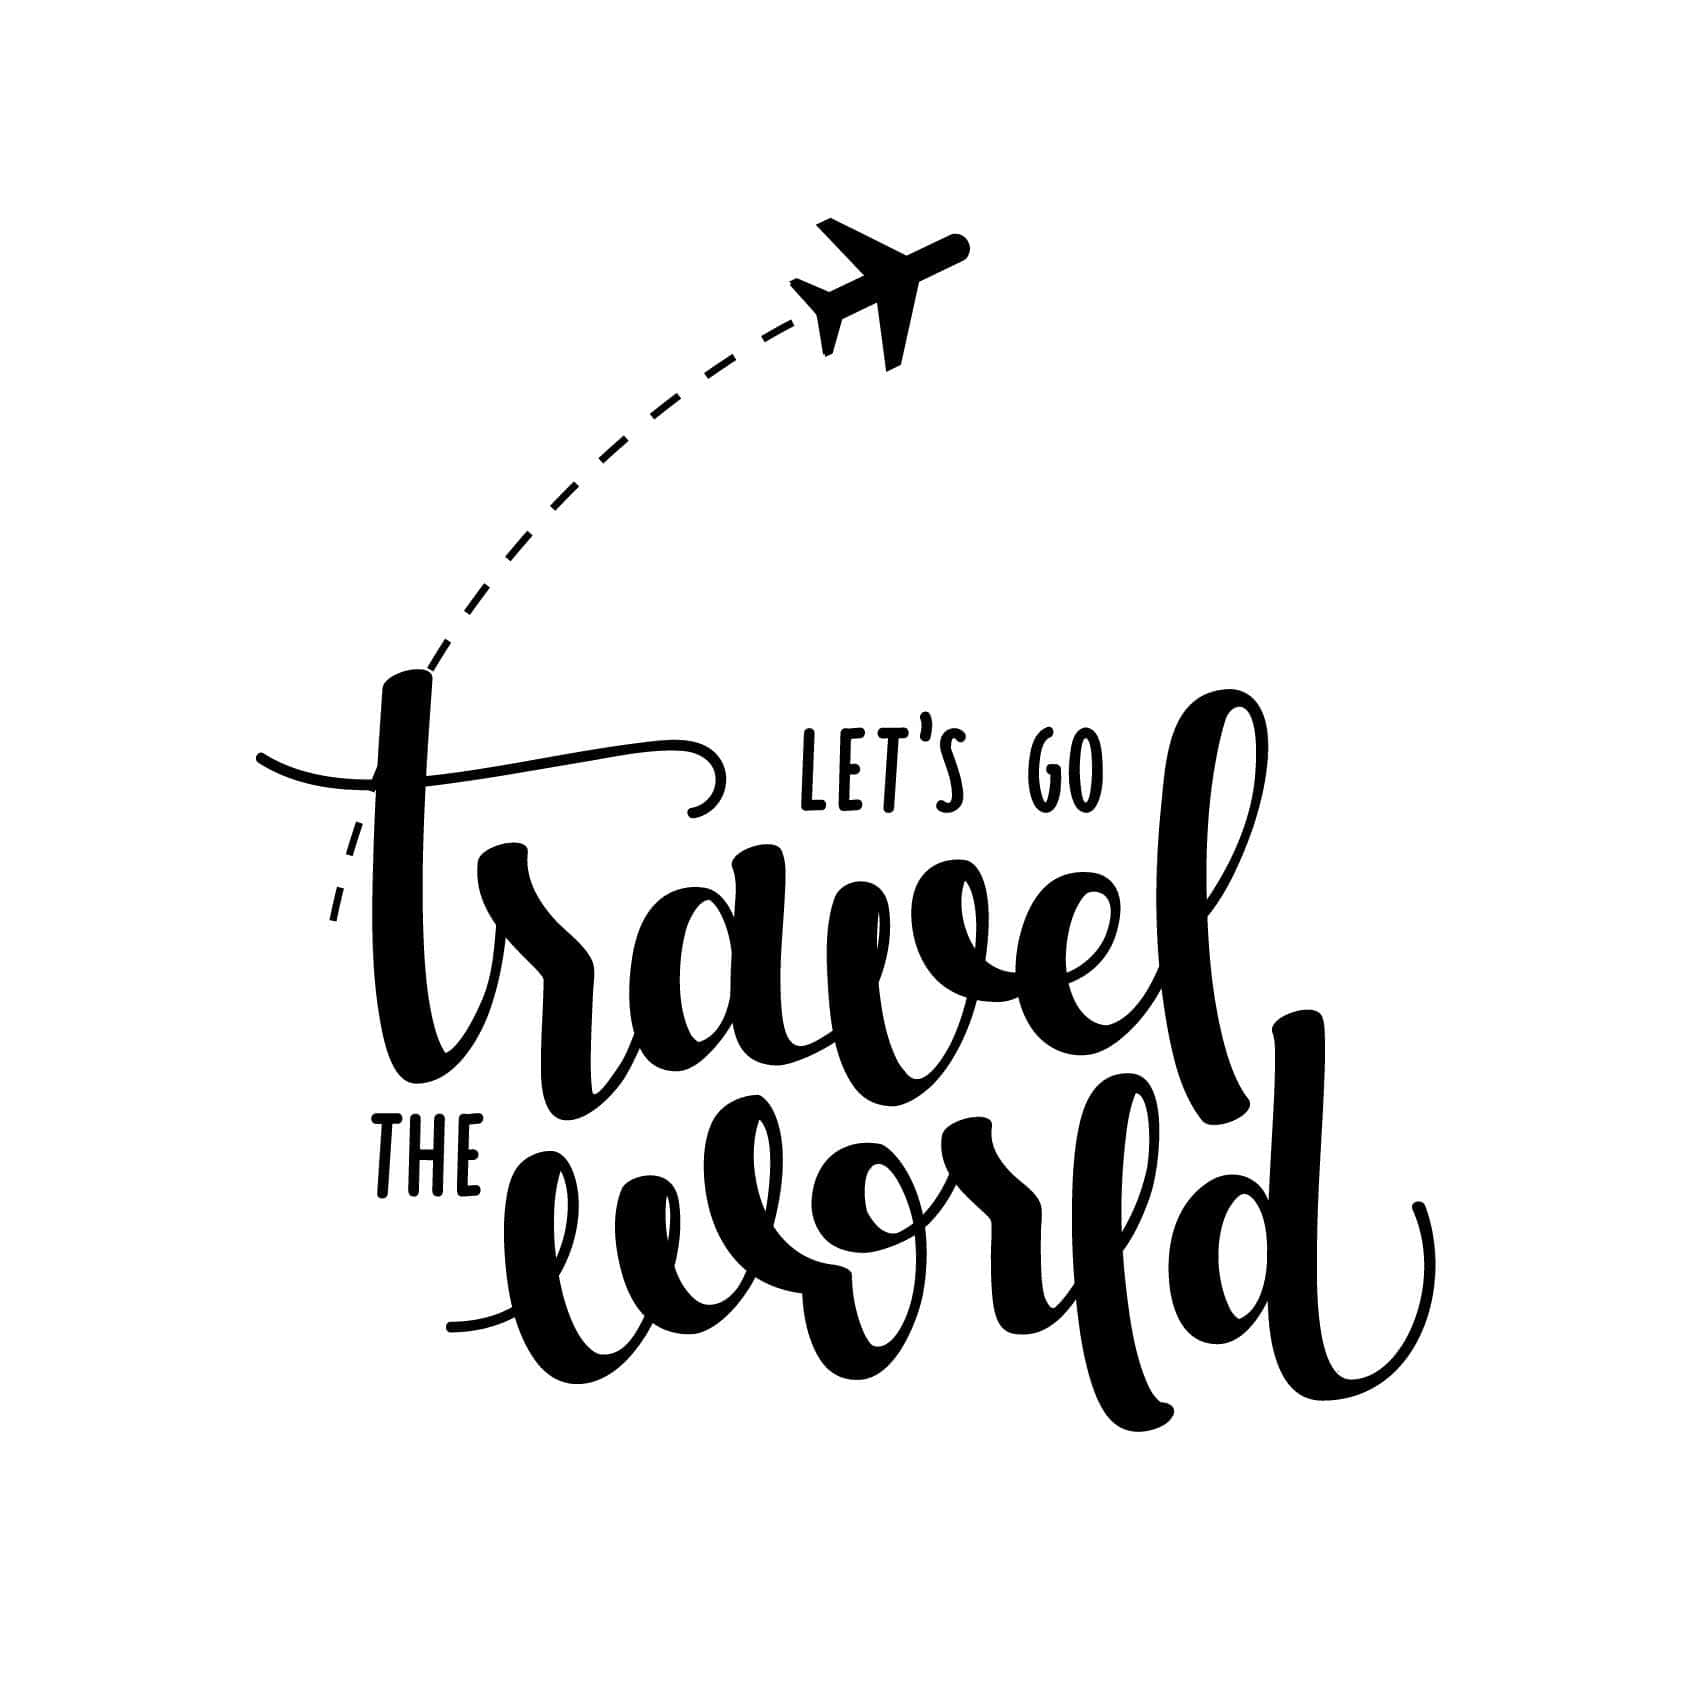 Autocollant voyage et aventures Let's go tour du monde - TenStickers